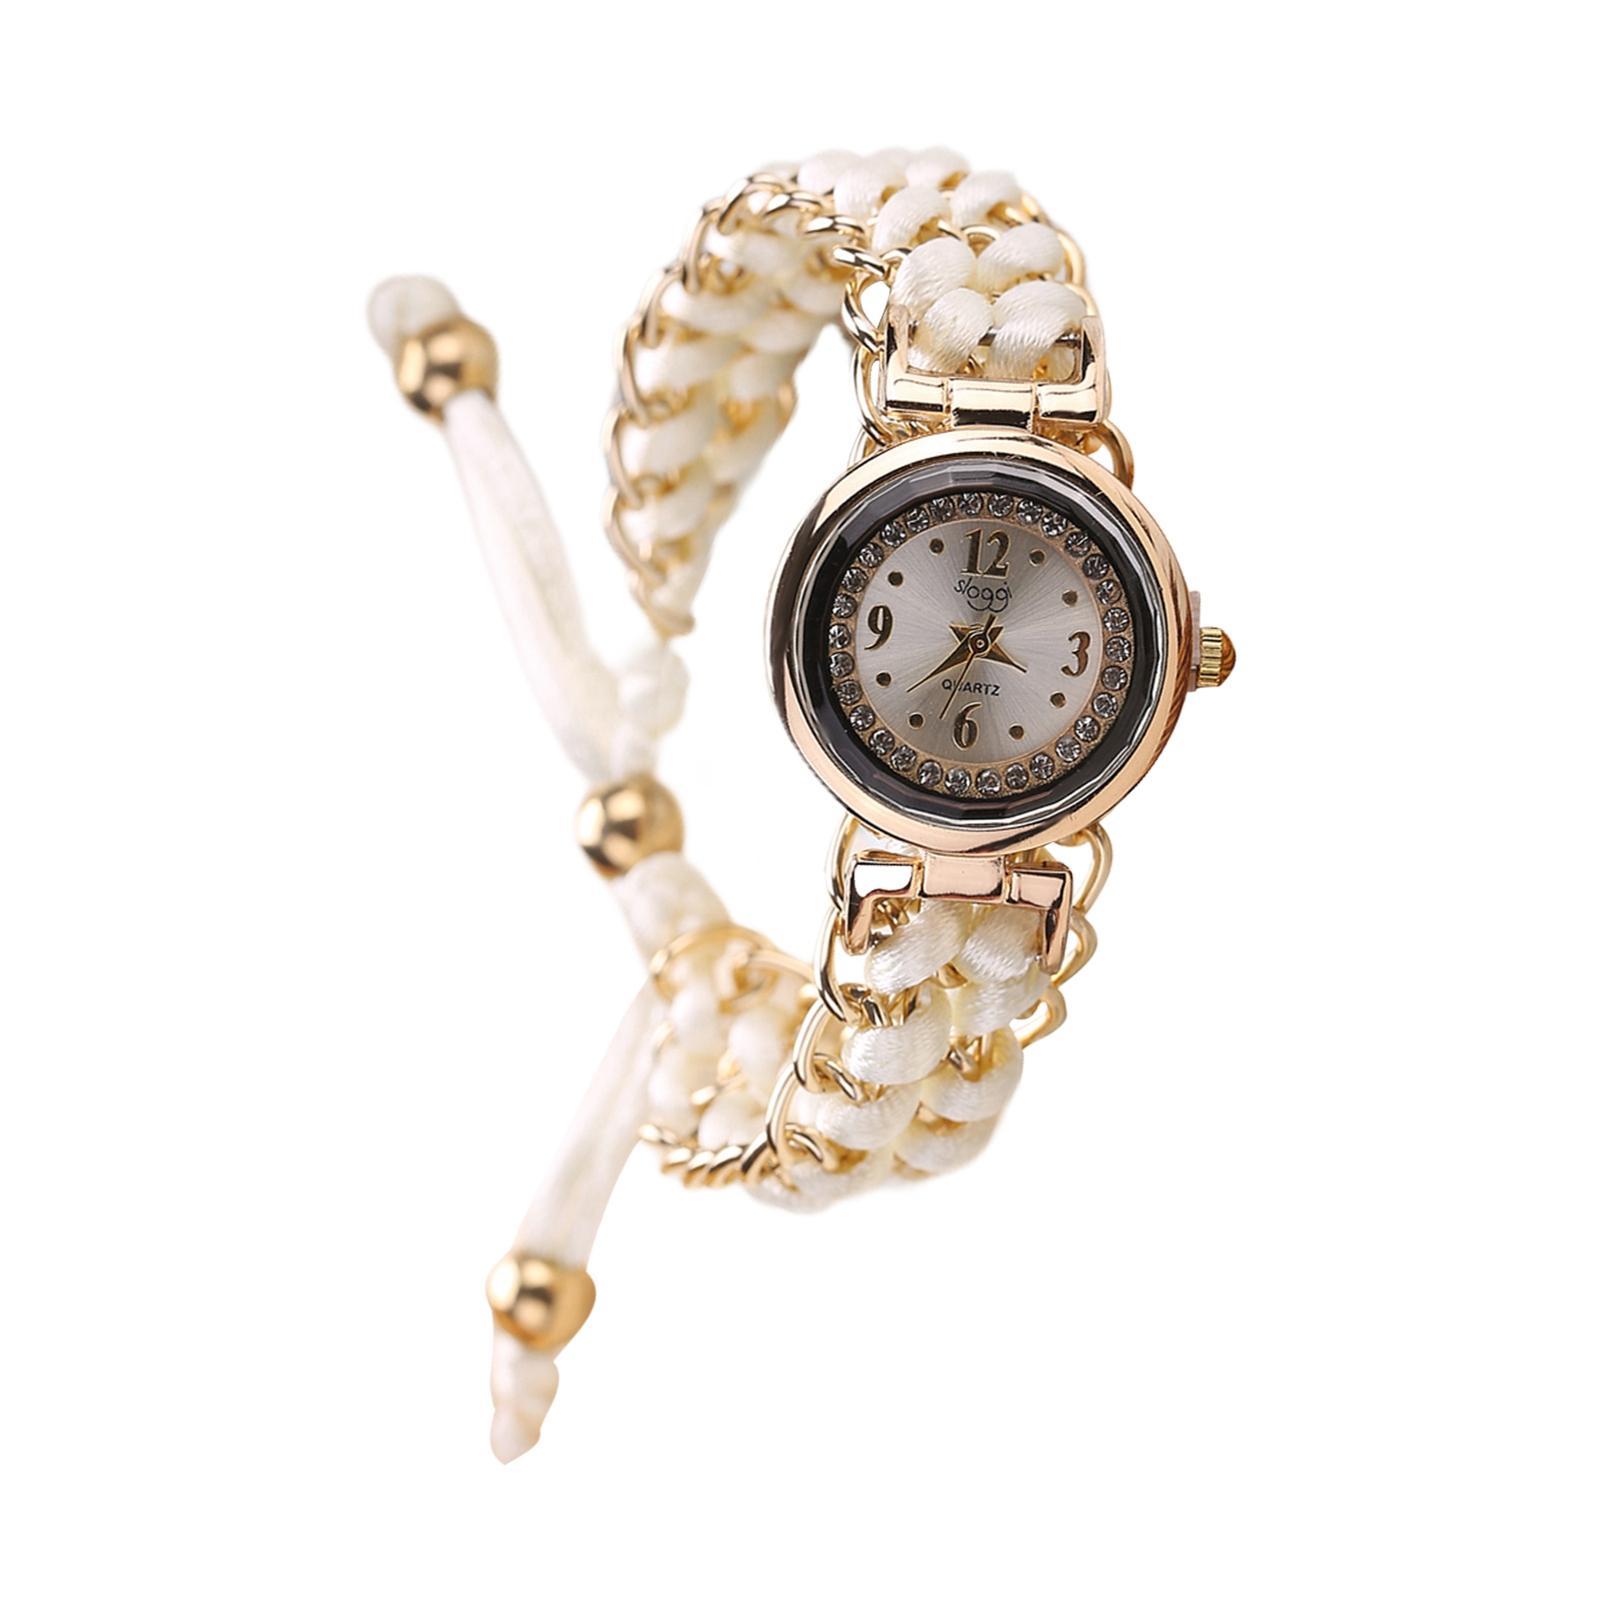 Lady  Watch Bracelet Jewelry Fashion Casual Watch Analog Wrist Watch White